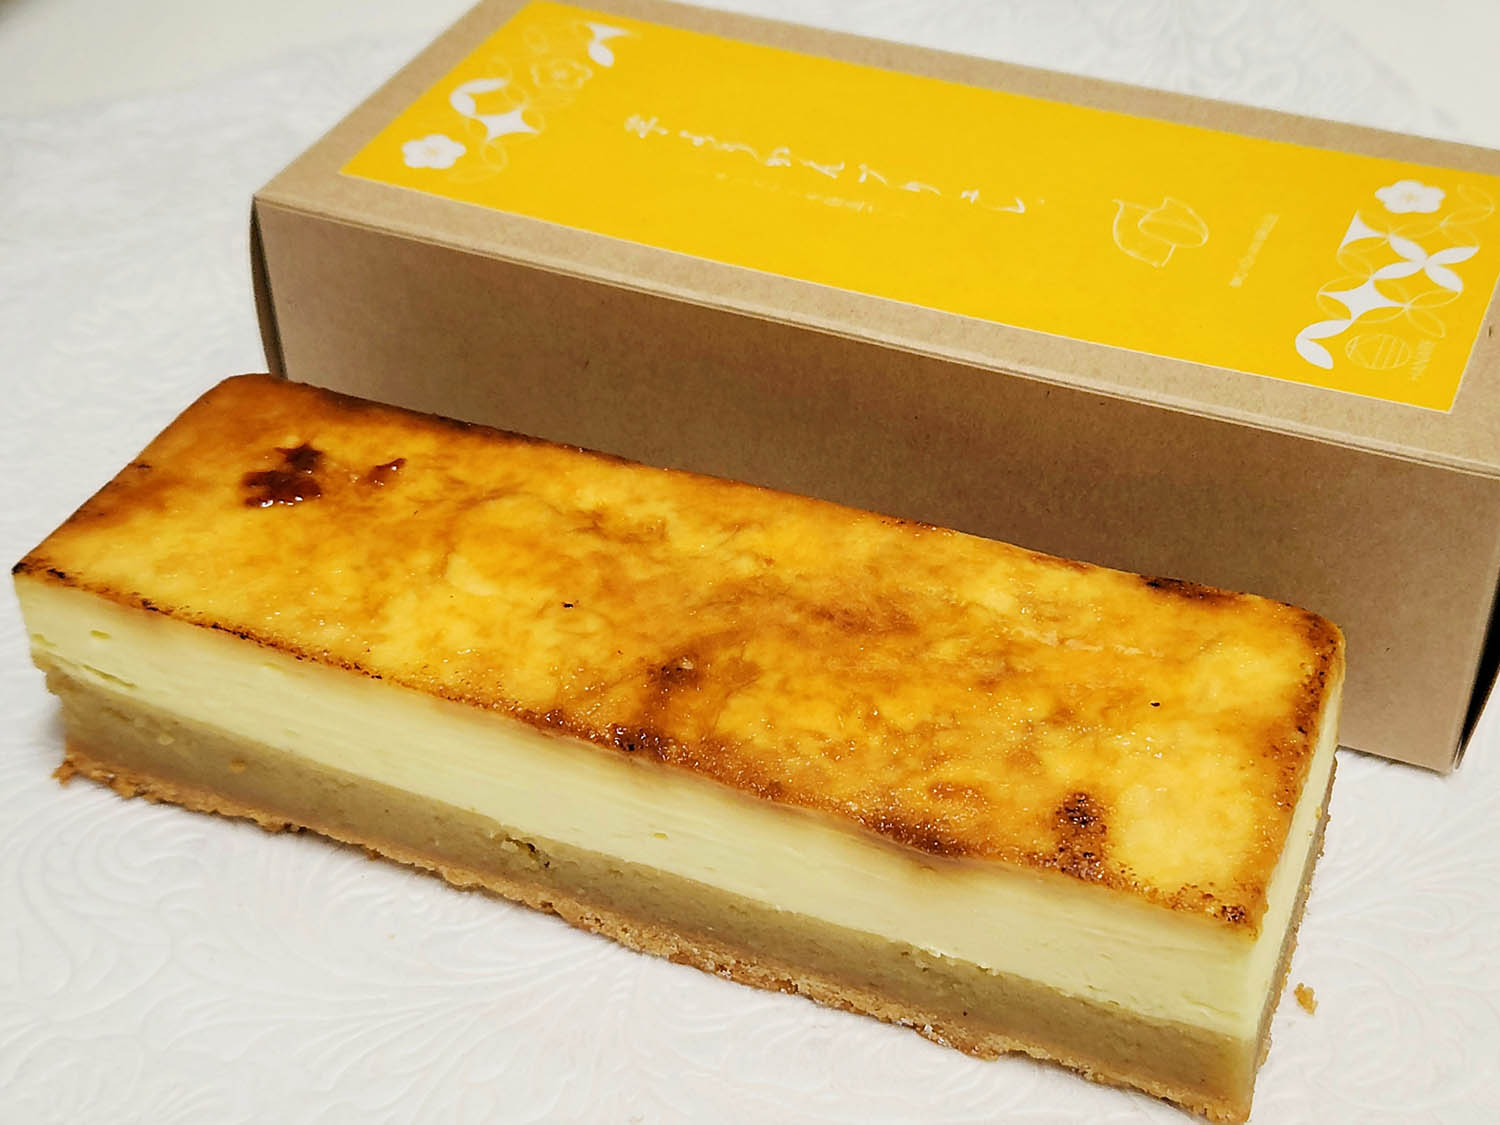 芋ようかんブリュレ〜チーズケーキ仕立て〜 2970円。